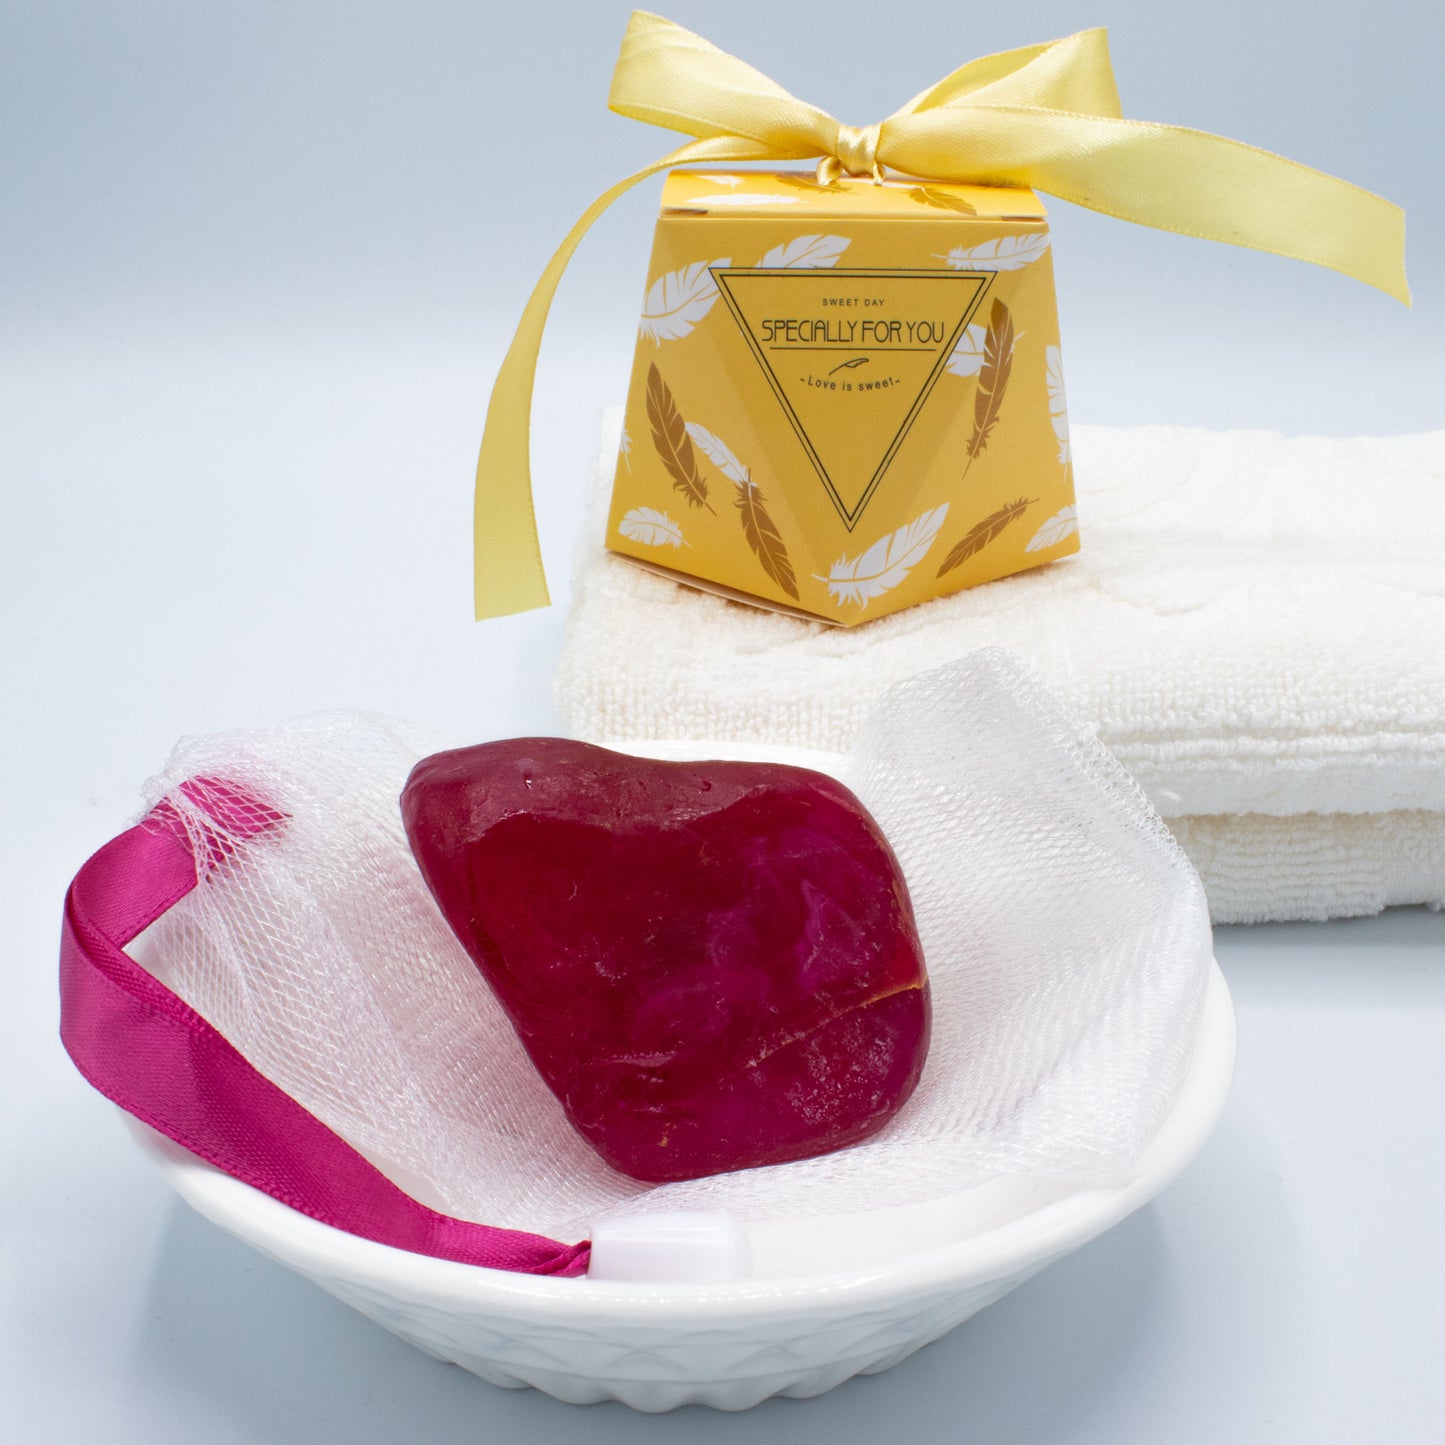 Diamantseife · Kristallseife · Rubin mit dem Duft nach Sommerrose · Handmade mit ätherischen Ölen - AMADO-SelfCare